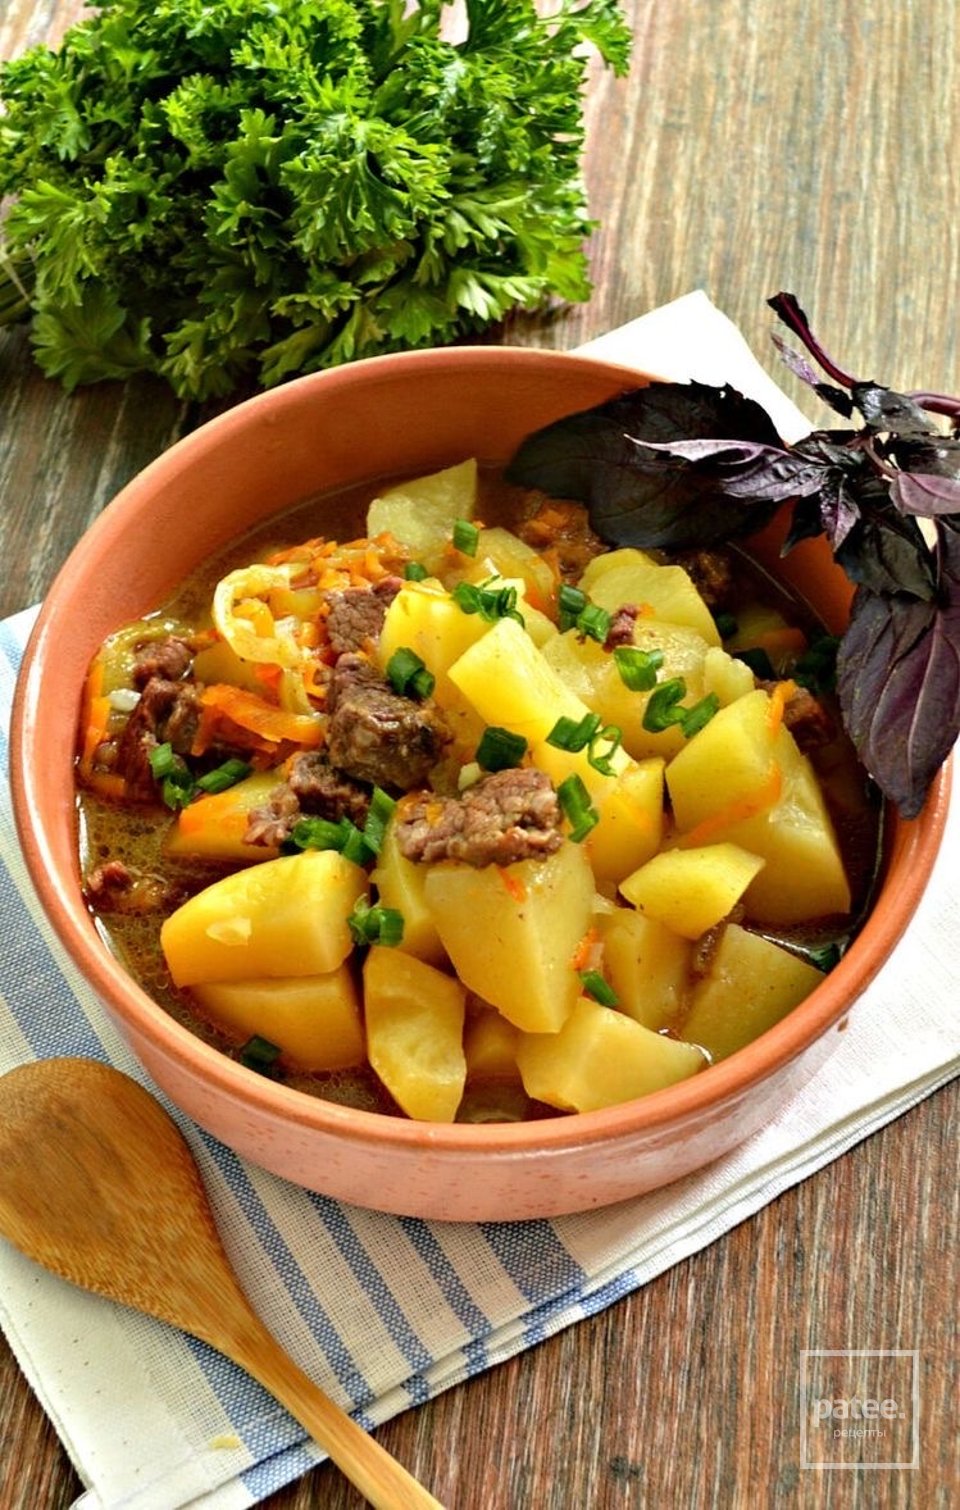 Картофель тушёный в мультиварке с овощами и говядиной 👍🏼 - Шаг 1